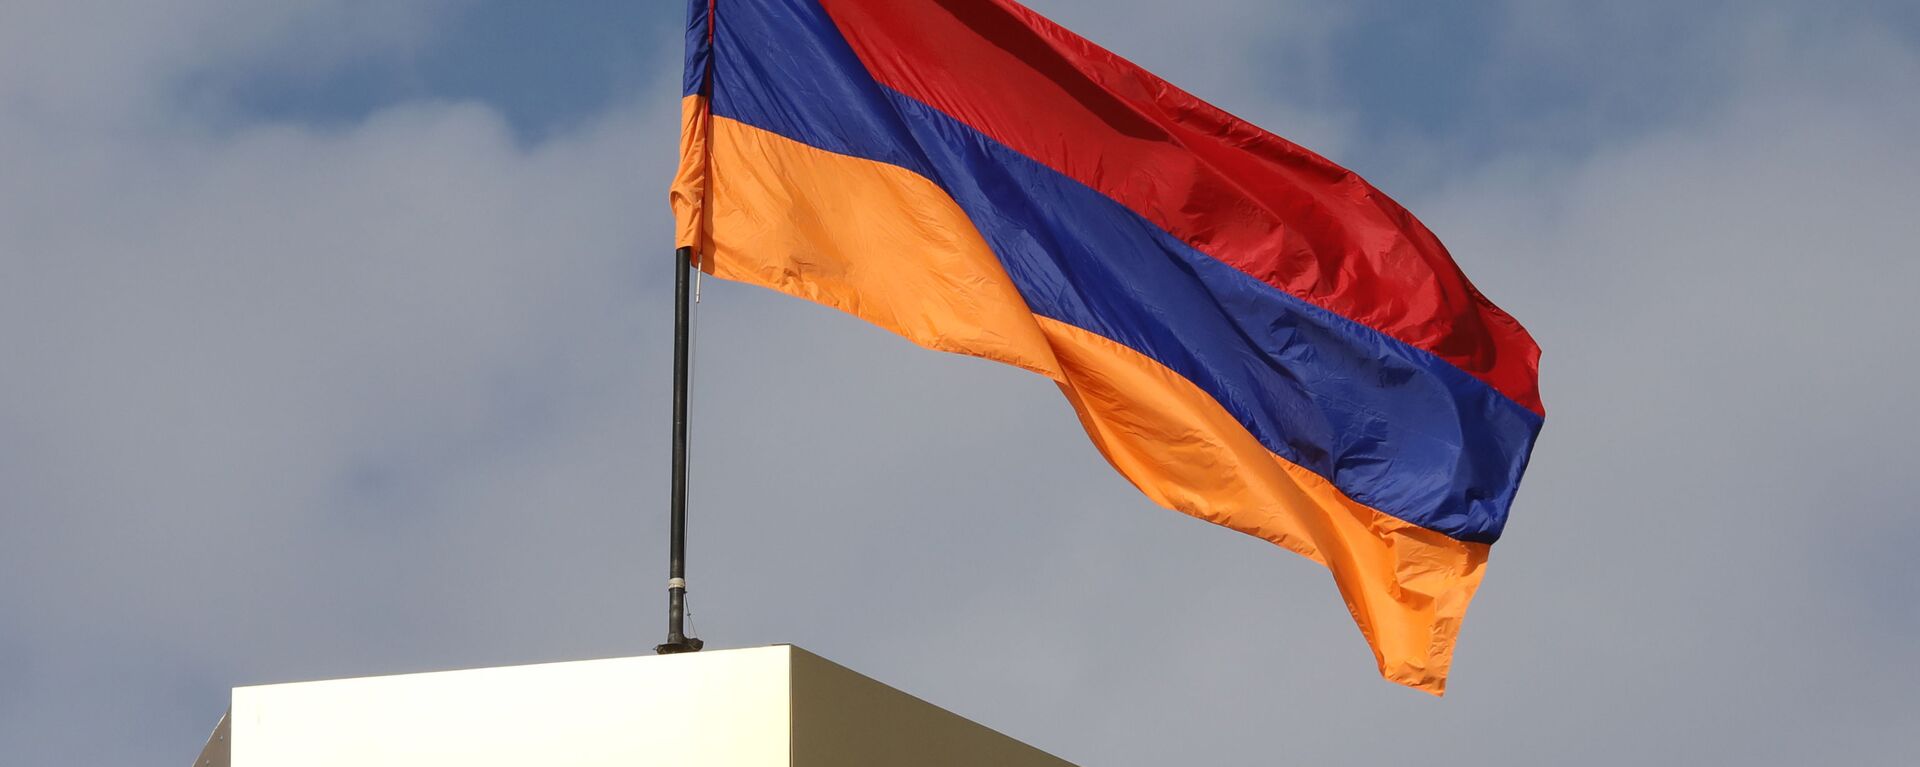 Ermenistan bayrak - Ermenistan bayrağı - Sputnik Türkiye, 1920, 31.03.2021